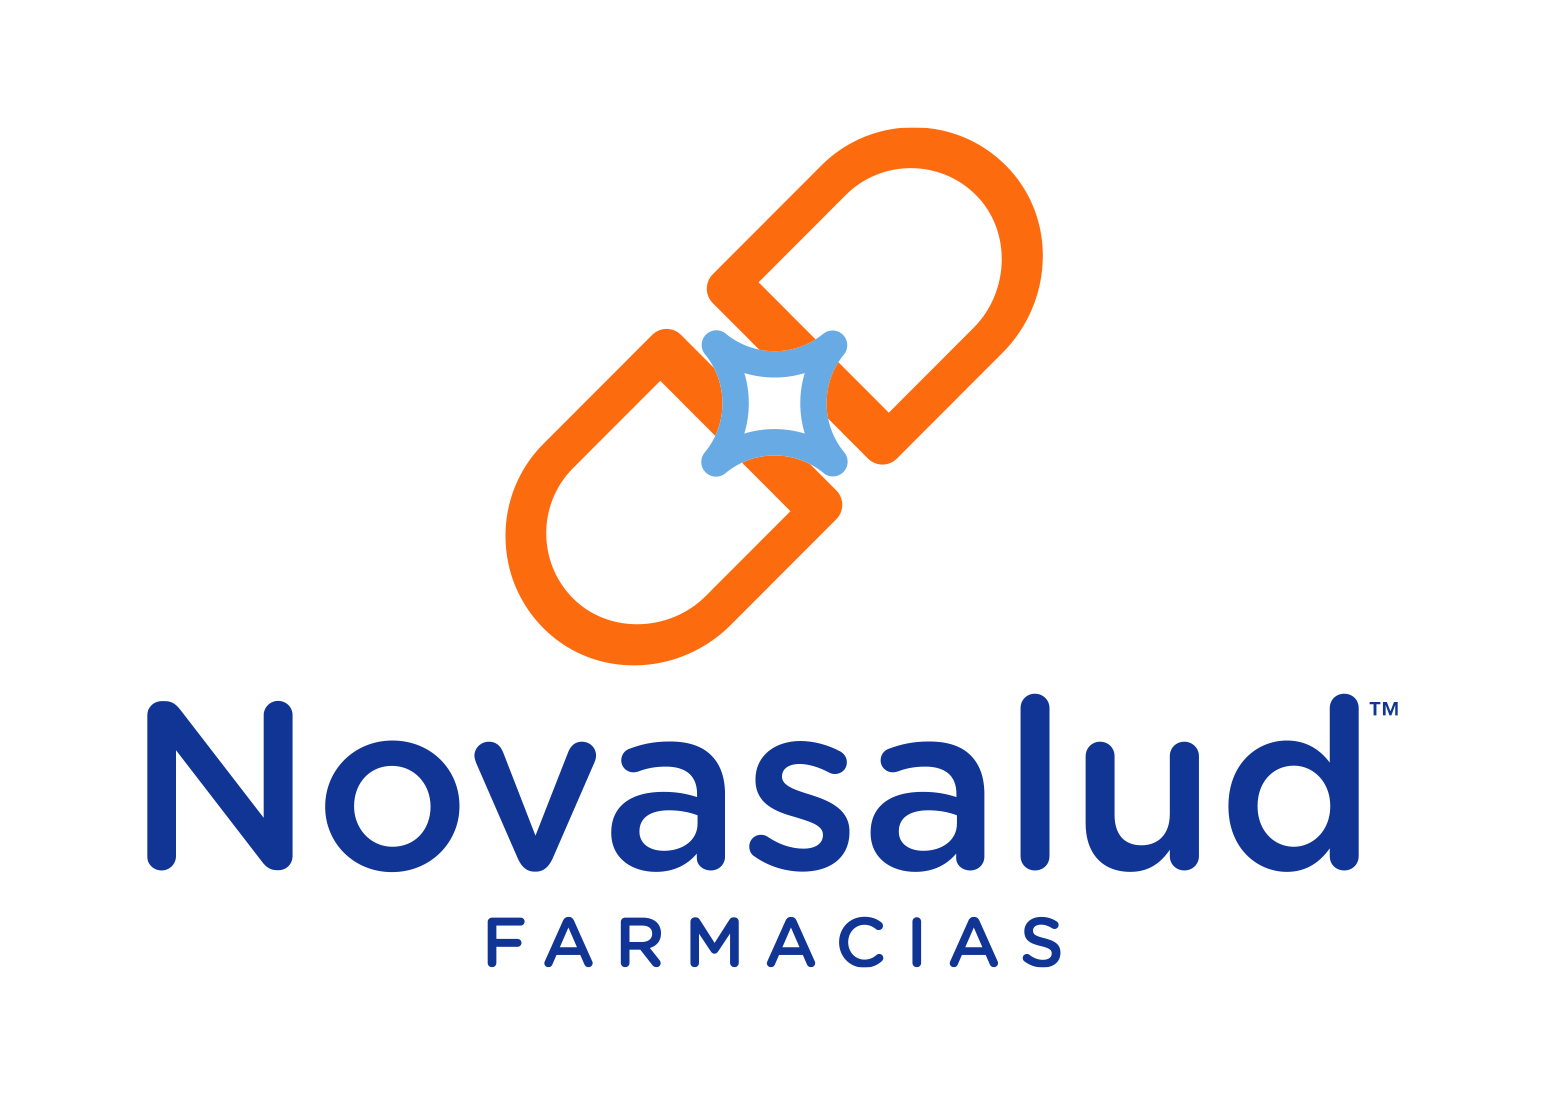 Farmacias Novasalud